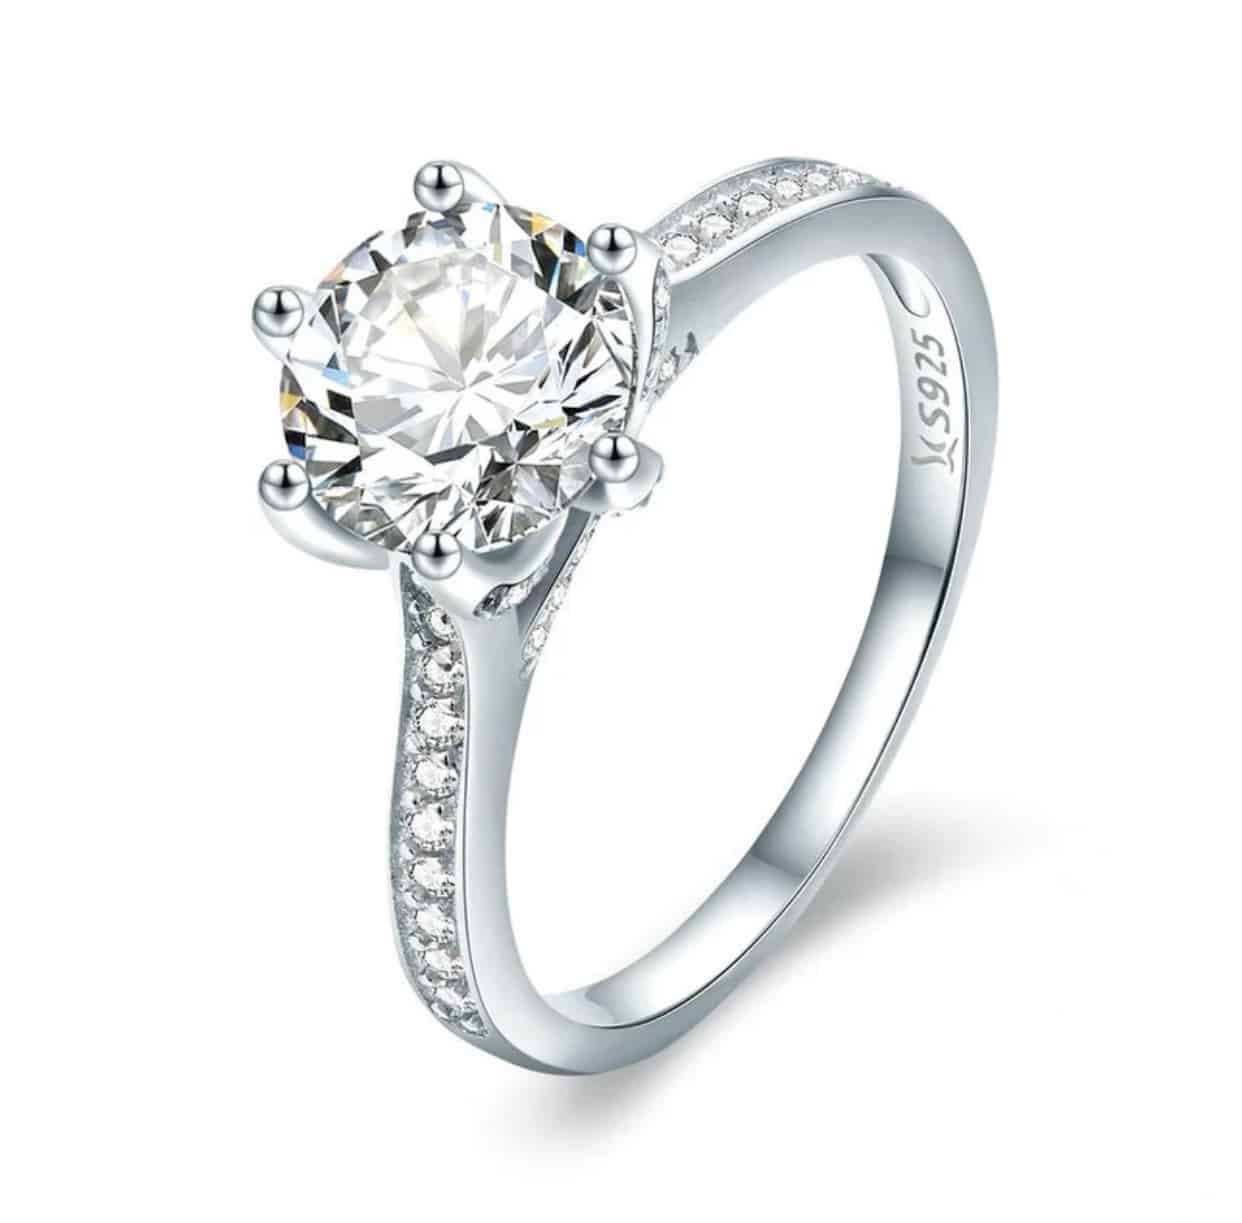 Product Vooraanzicht van onze prachtige mooie ring uit de collectie ringen. Deze ring met grote zirkonia steen en kleine steentjes is gemaakt van 925 sterling zilver. Een echt pronkstuk.